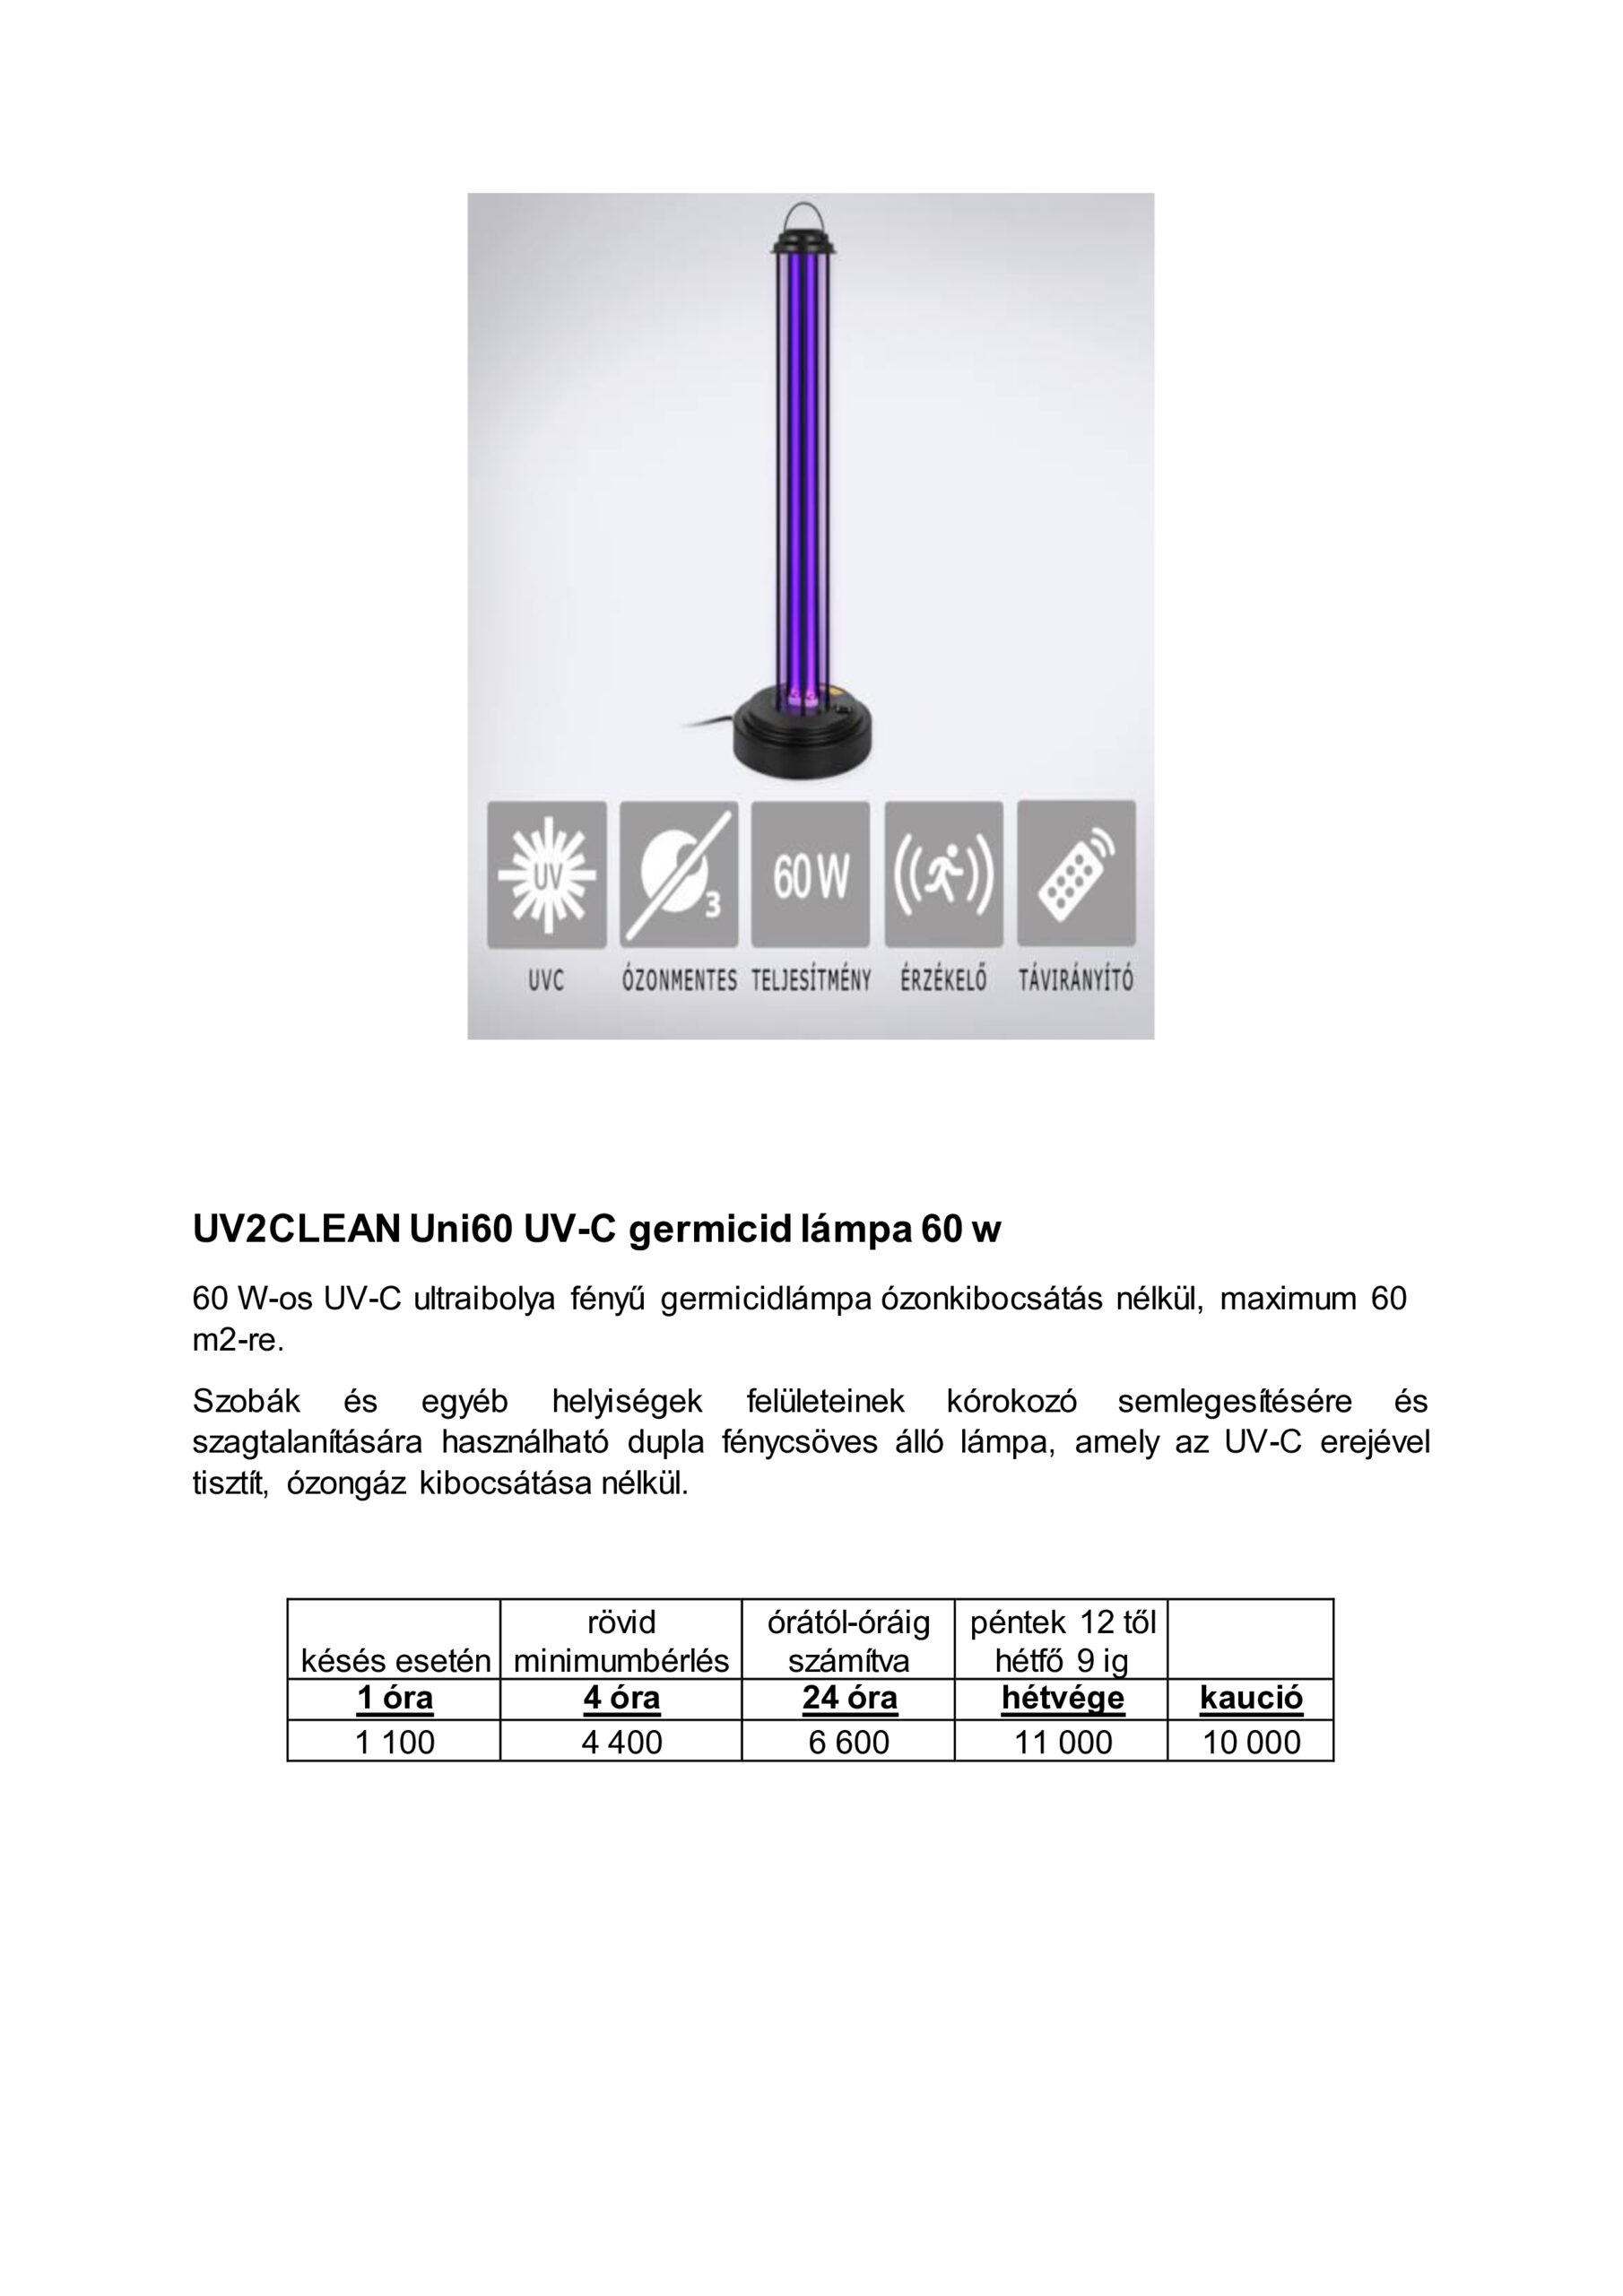 UV2 CLEAN UNI60 Germicid lámpa